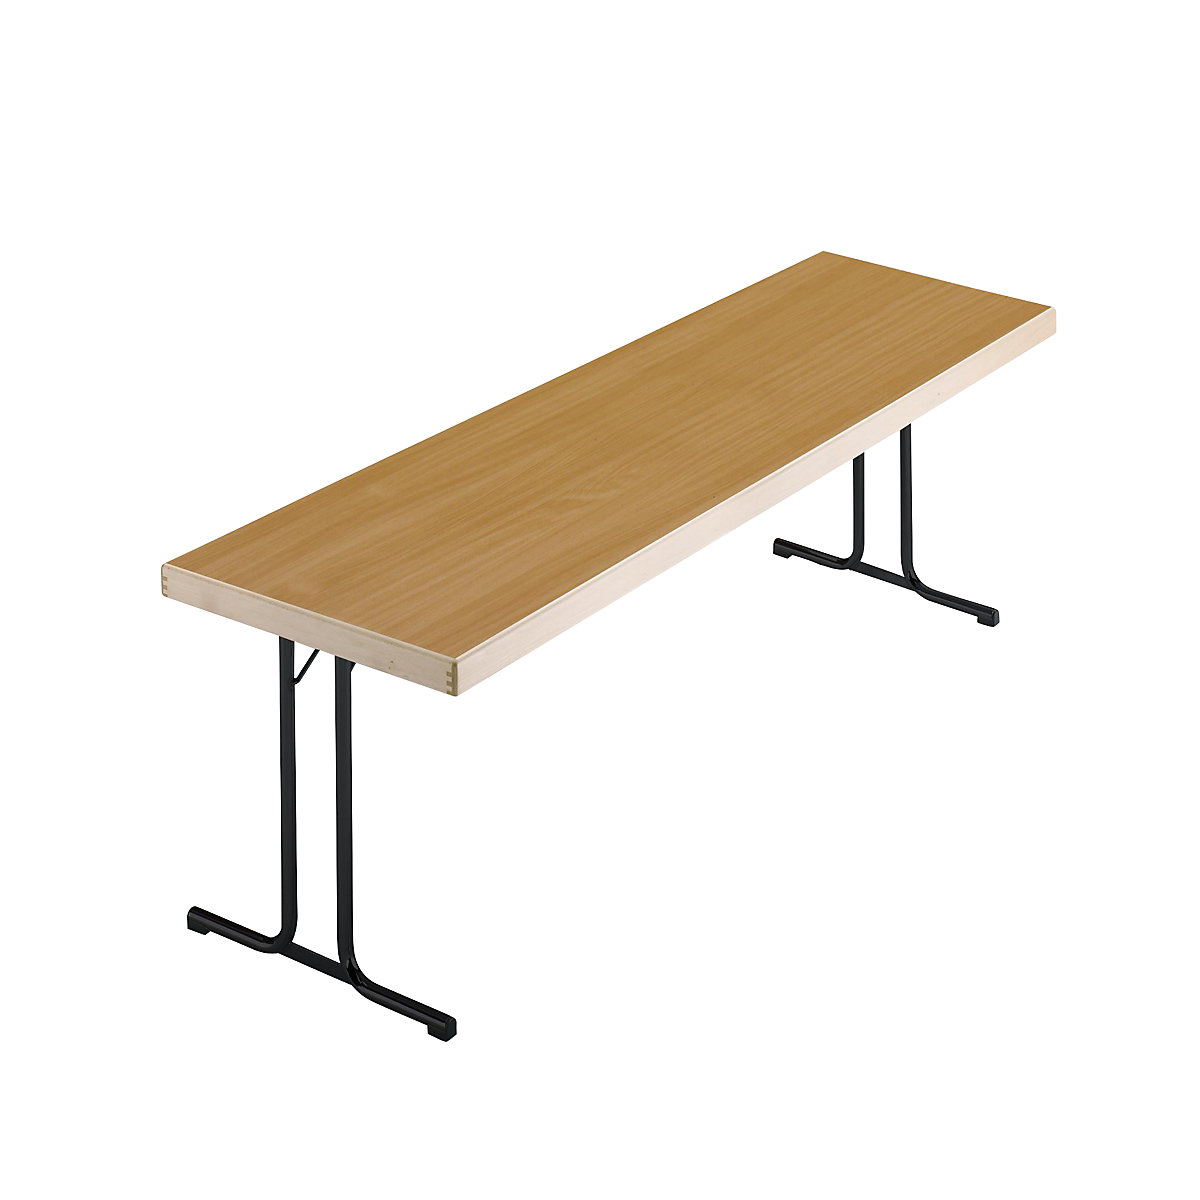 Sklopný stůl, podstavec s dvojitou T-nohou, 1700 x 700 mm, podstavec antracitový, deska bukový dekor-7